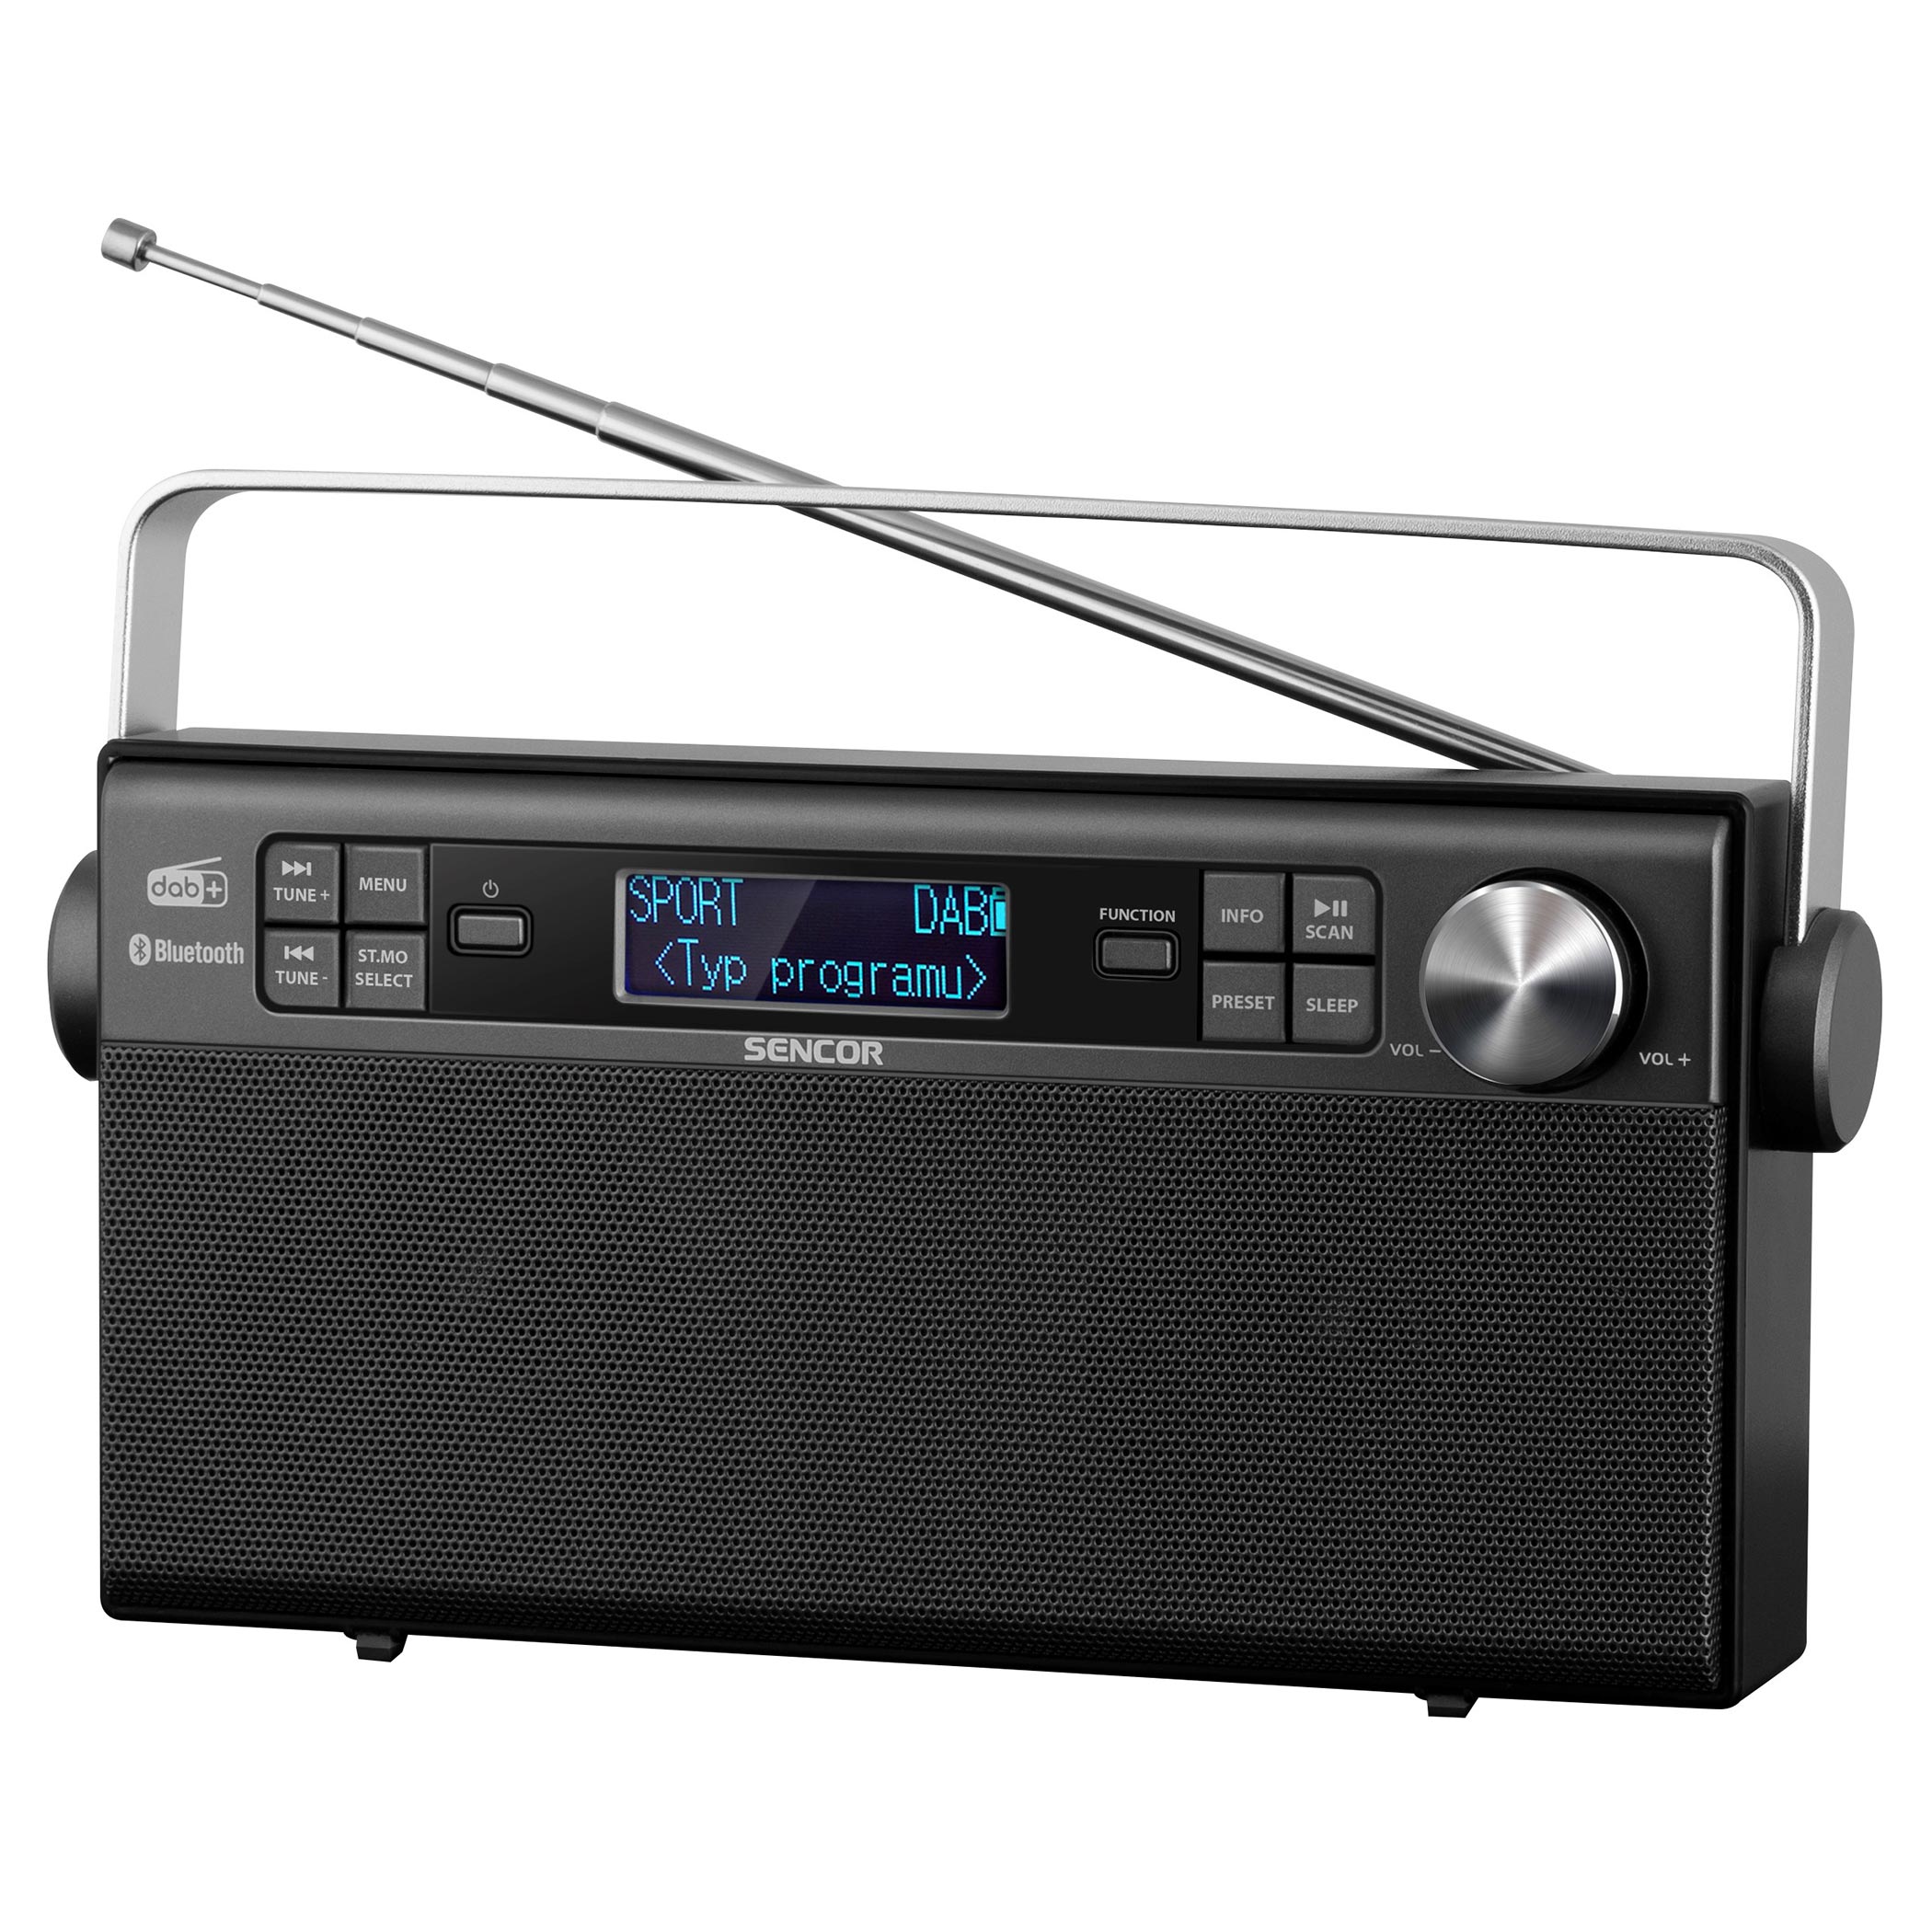 Digital Radio DAB+ | SRD 7800 | Sencor